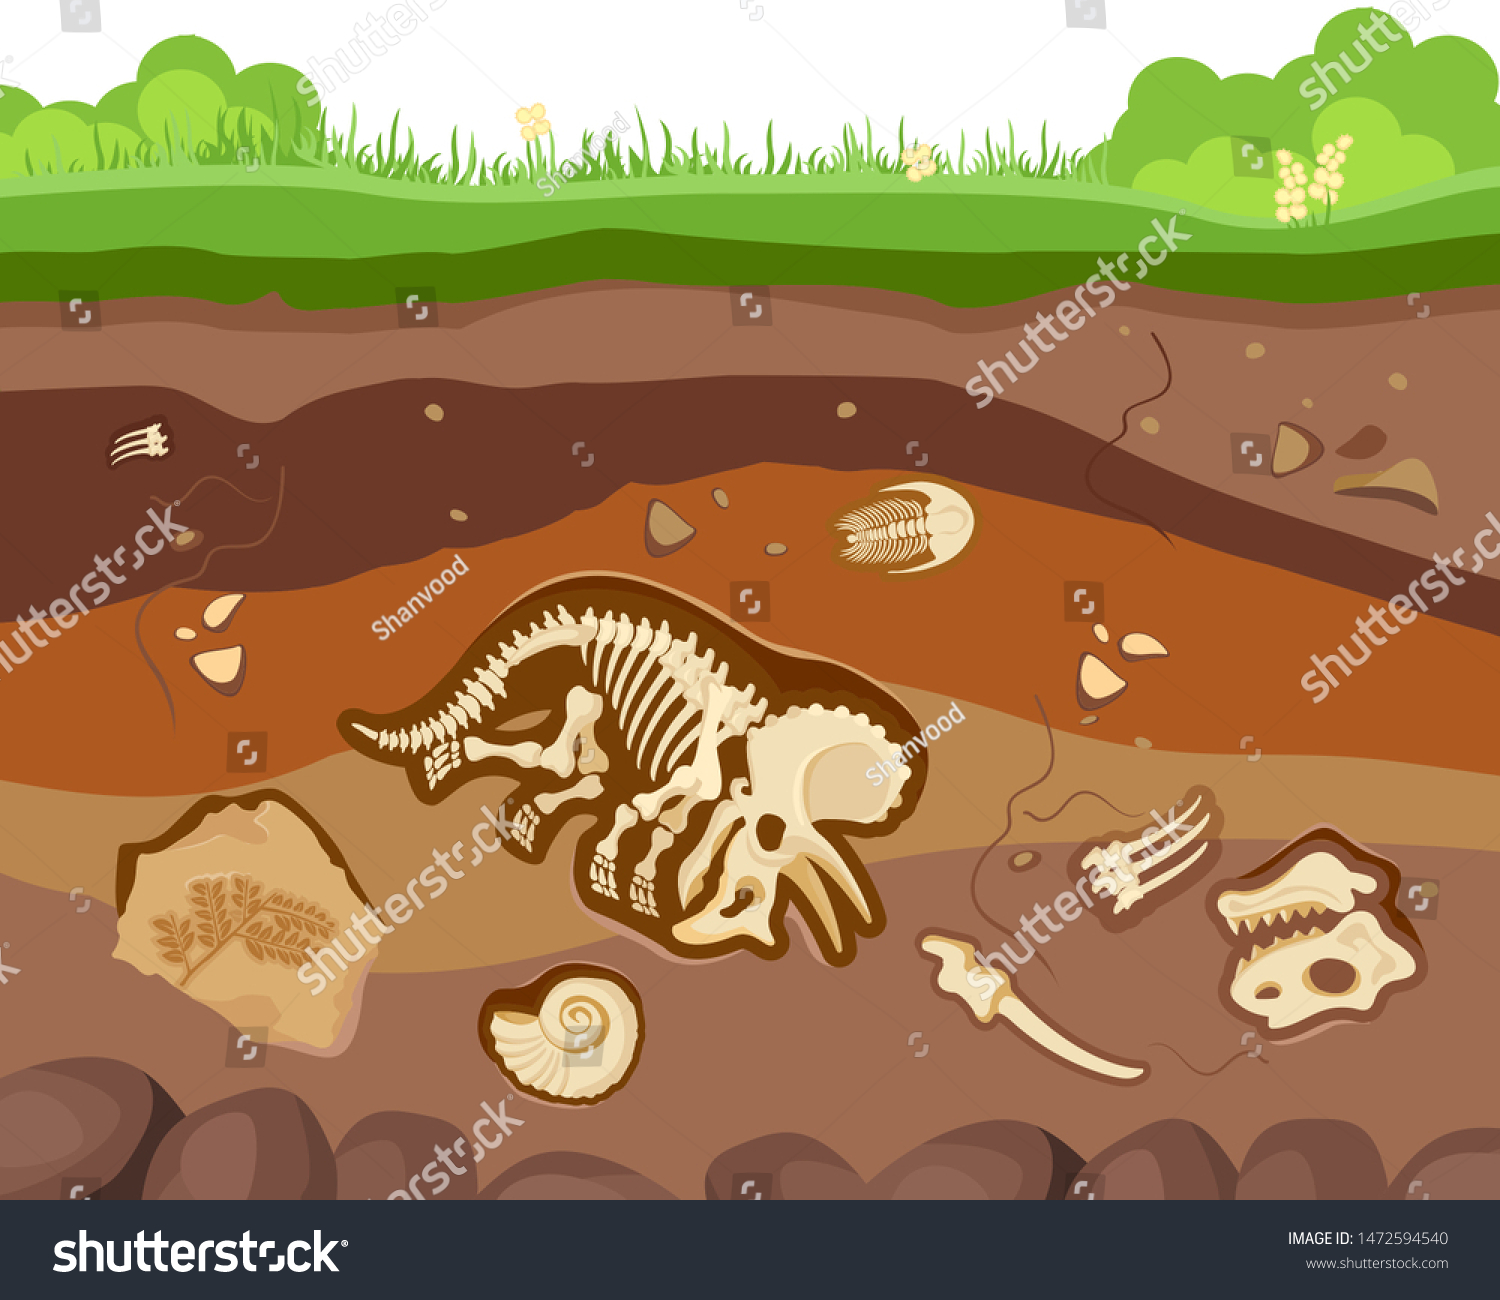 化石動物 恐竜 甲殻類 骨が埋まった土の層 ベクターフラットスタイルの漫画のイラスト のベクター画像素材 ロイヤリティフリー